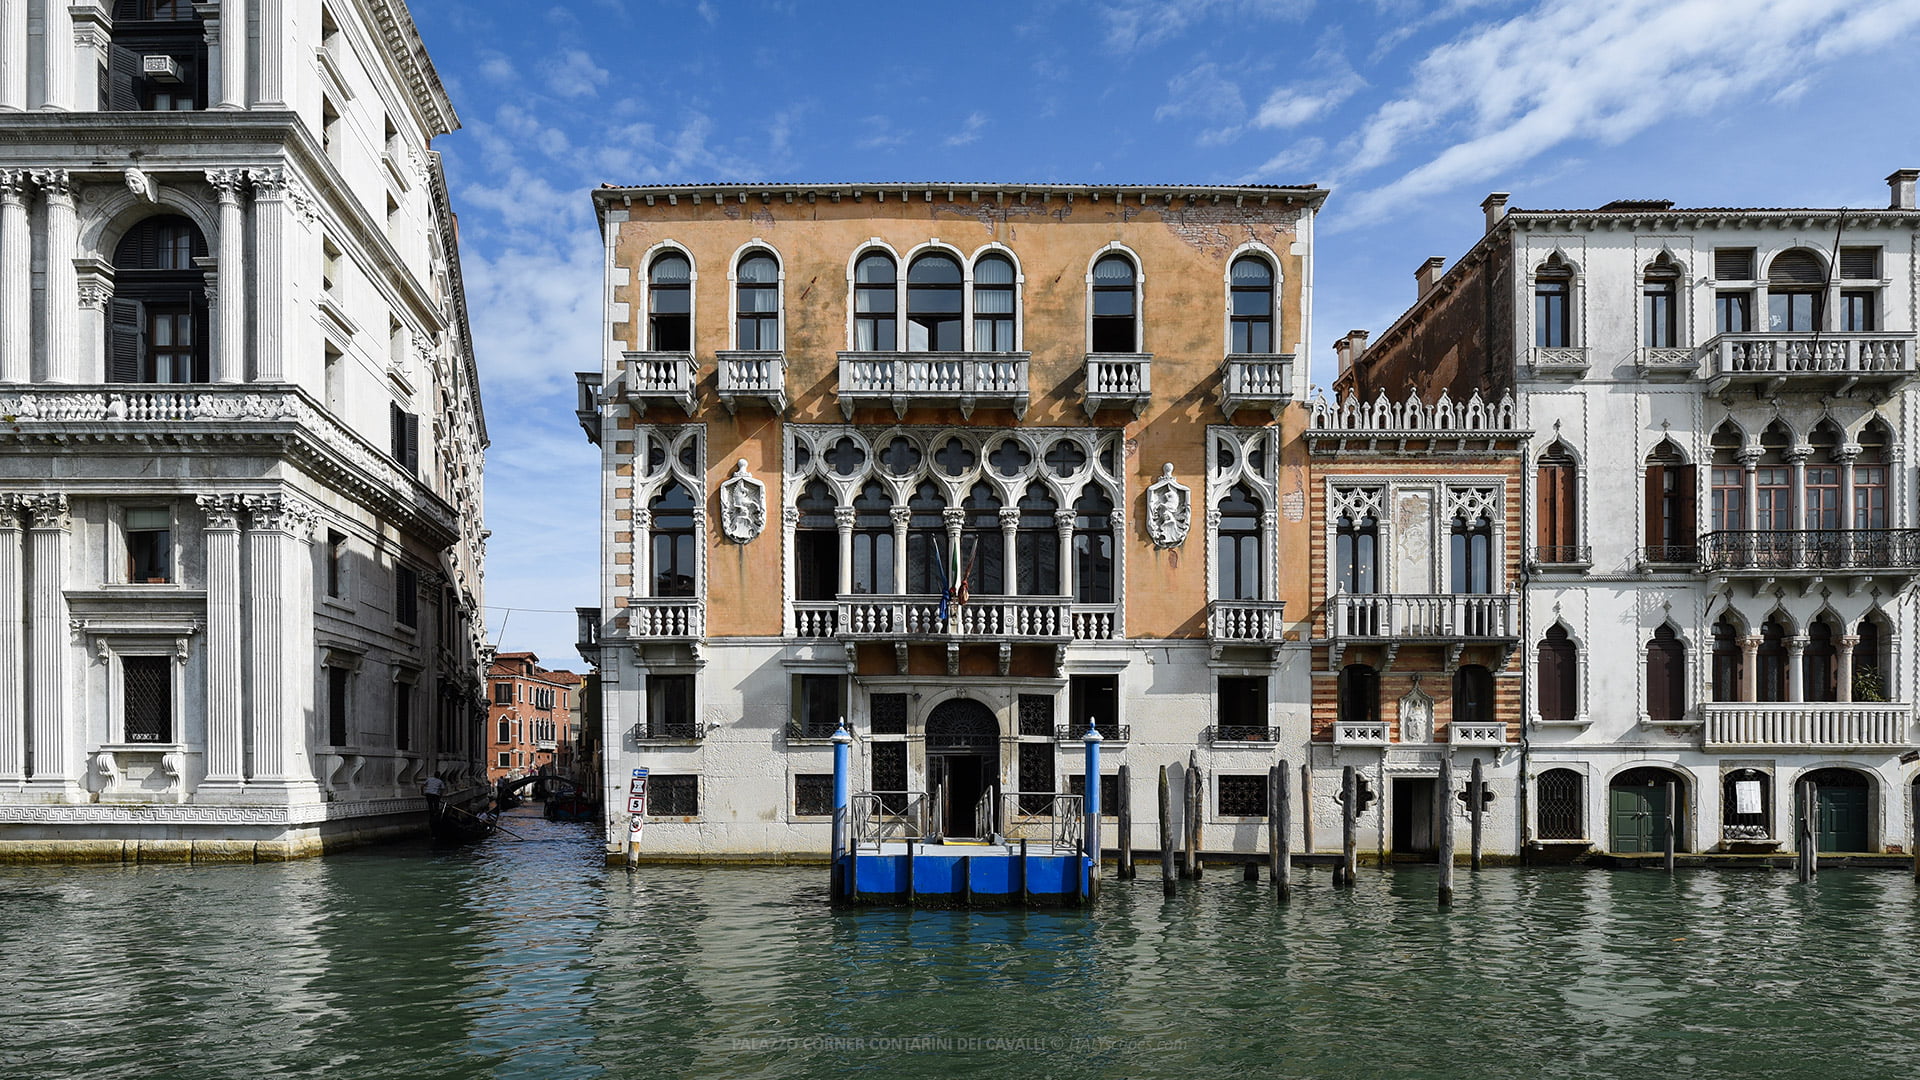 Palazzo Corner Contarini dei Cavalli - Venice